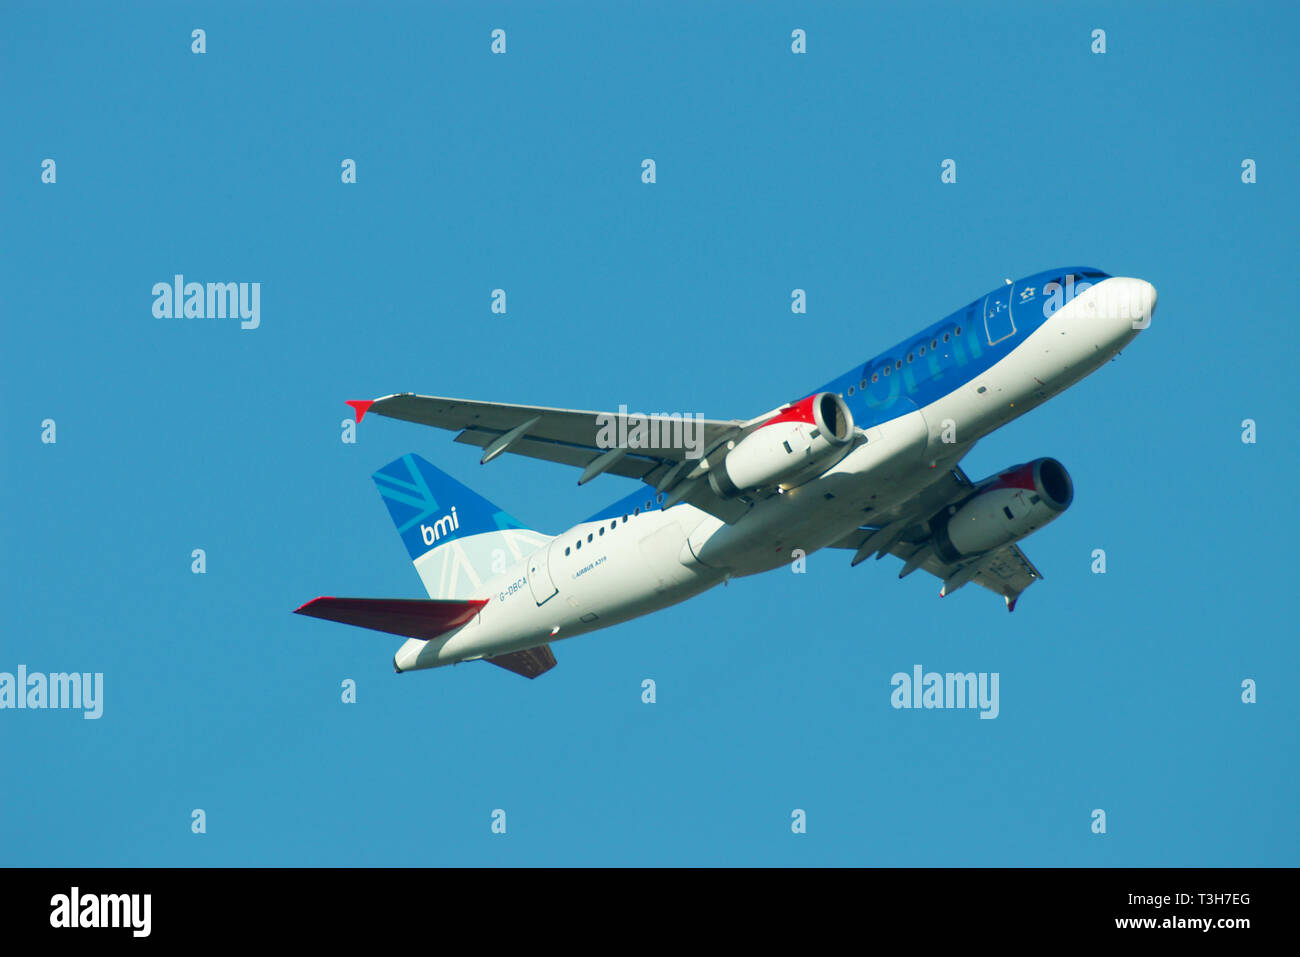 BMI British Midland International Airbus A319 jet airliner avión despegar desde el aeropuerto de Heathrow, Londres, Reino Unido en el cielo azul con espacio para copiar Foto de stock